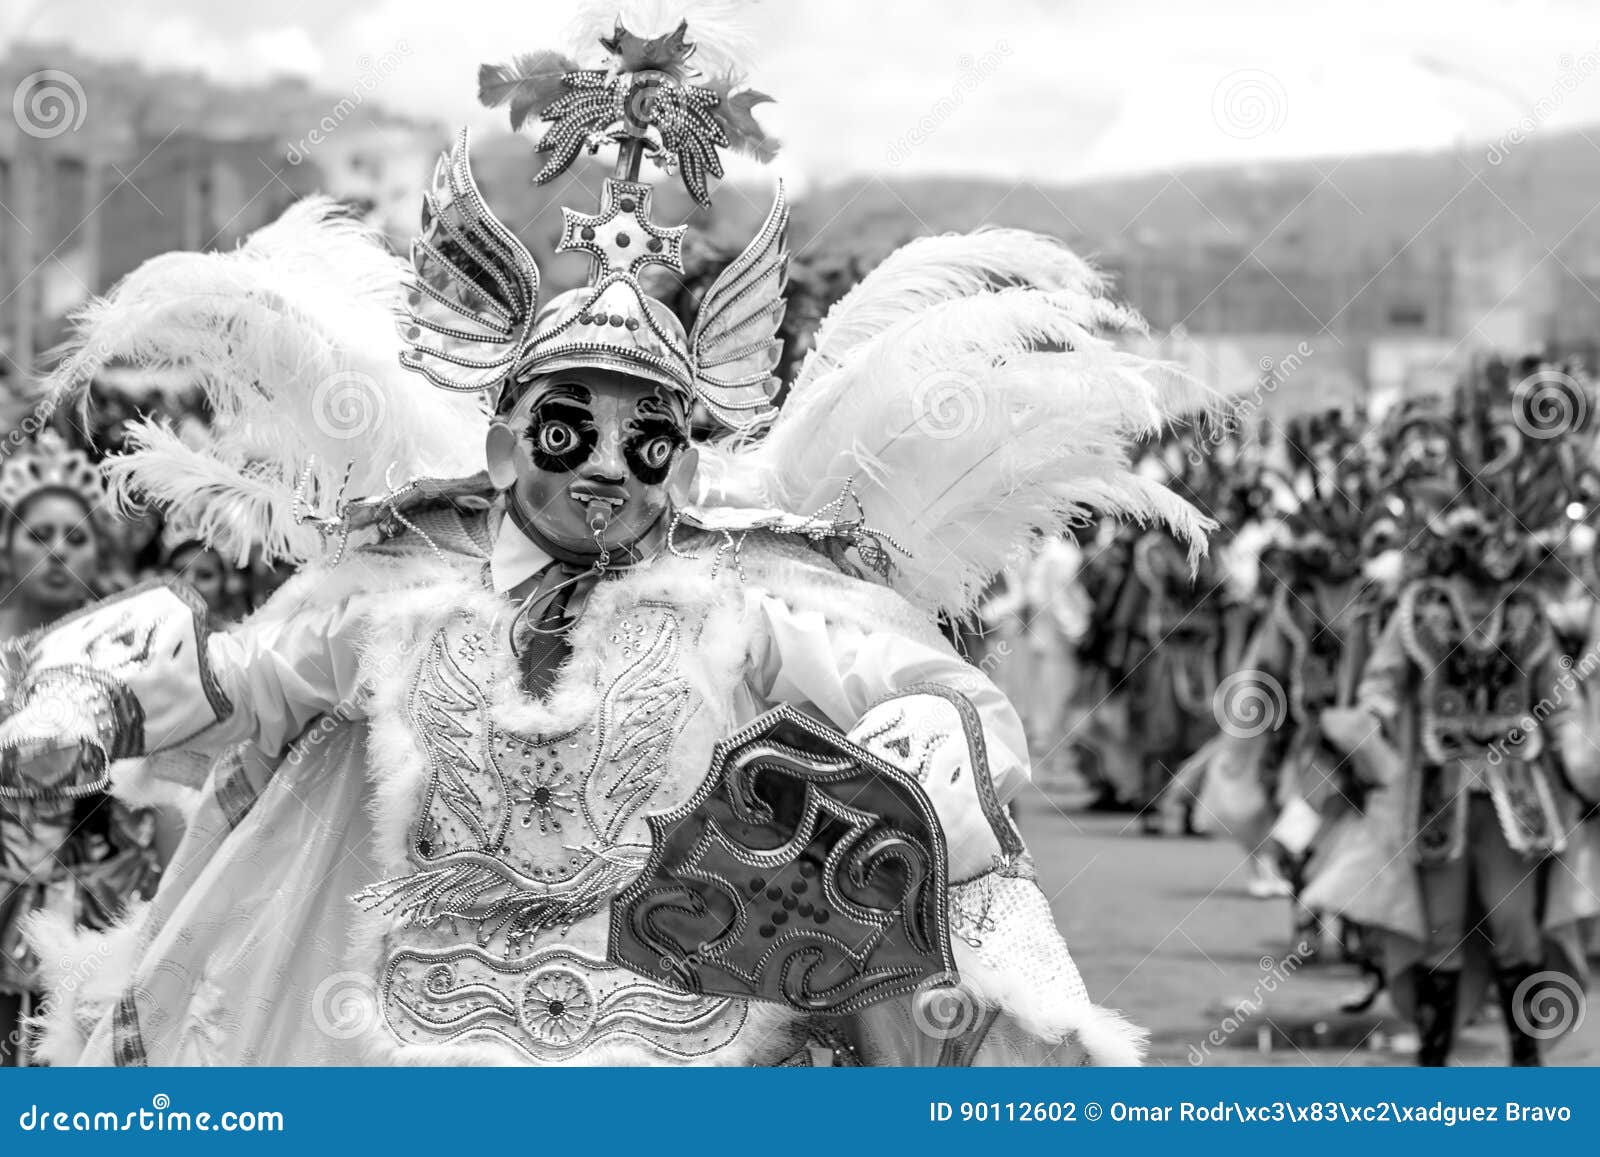 ÃÂngel de danza diablada peru - bolivia